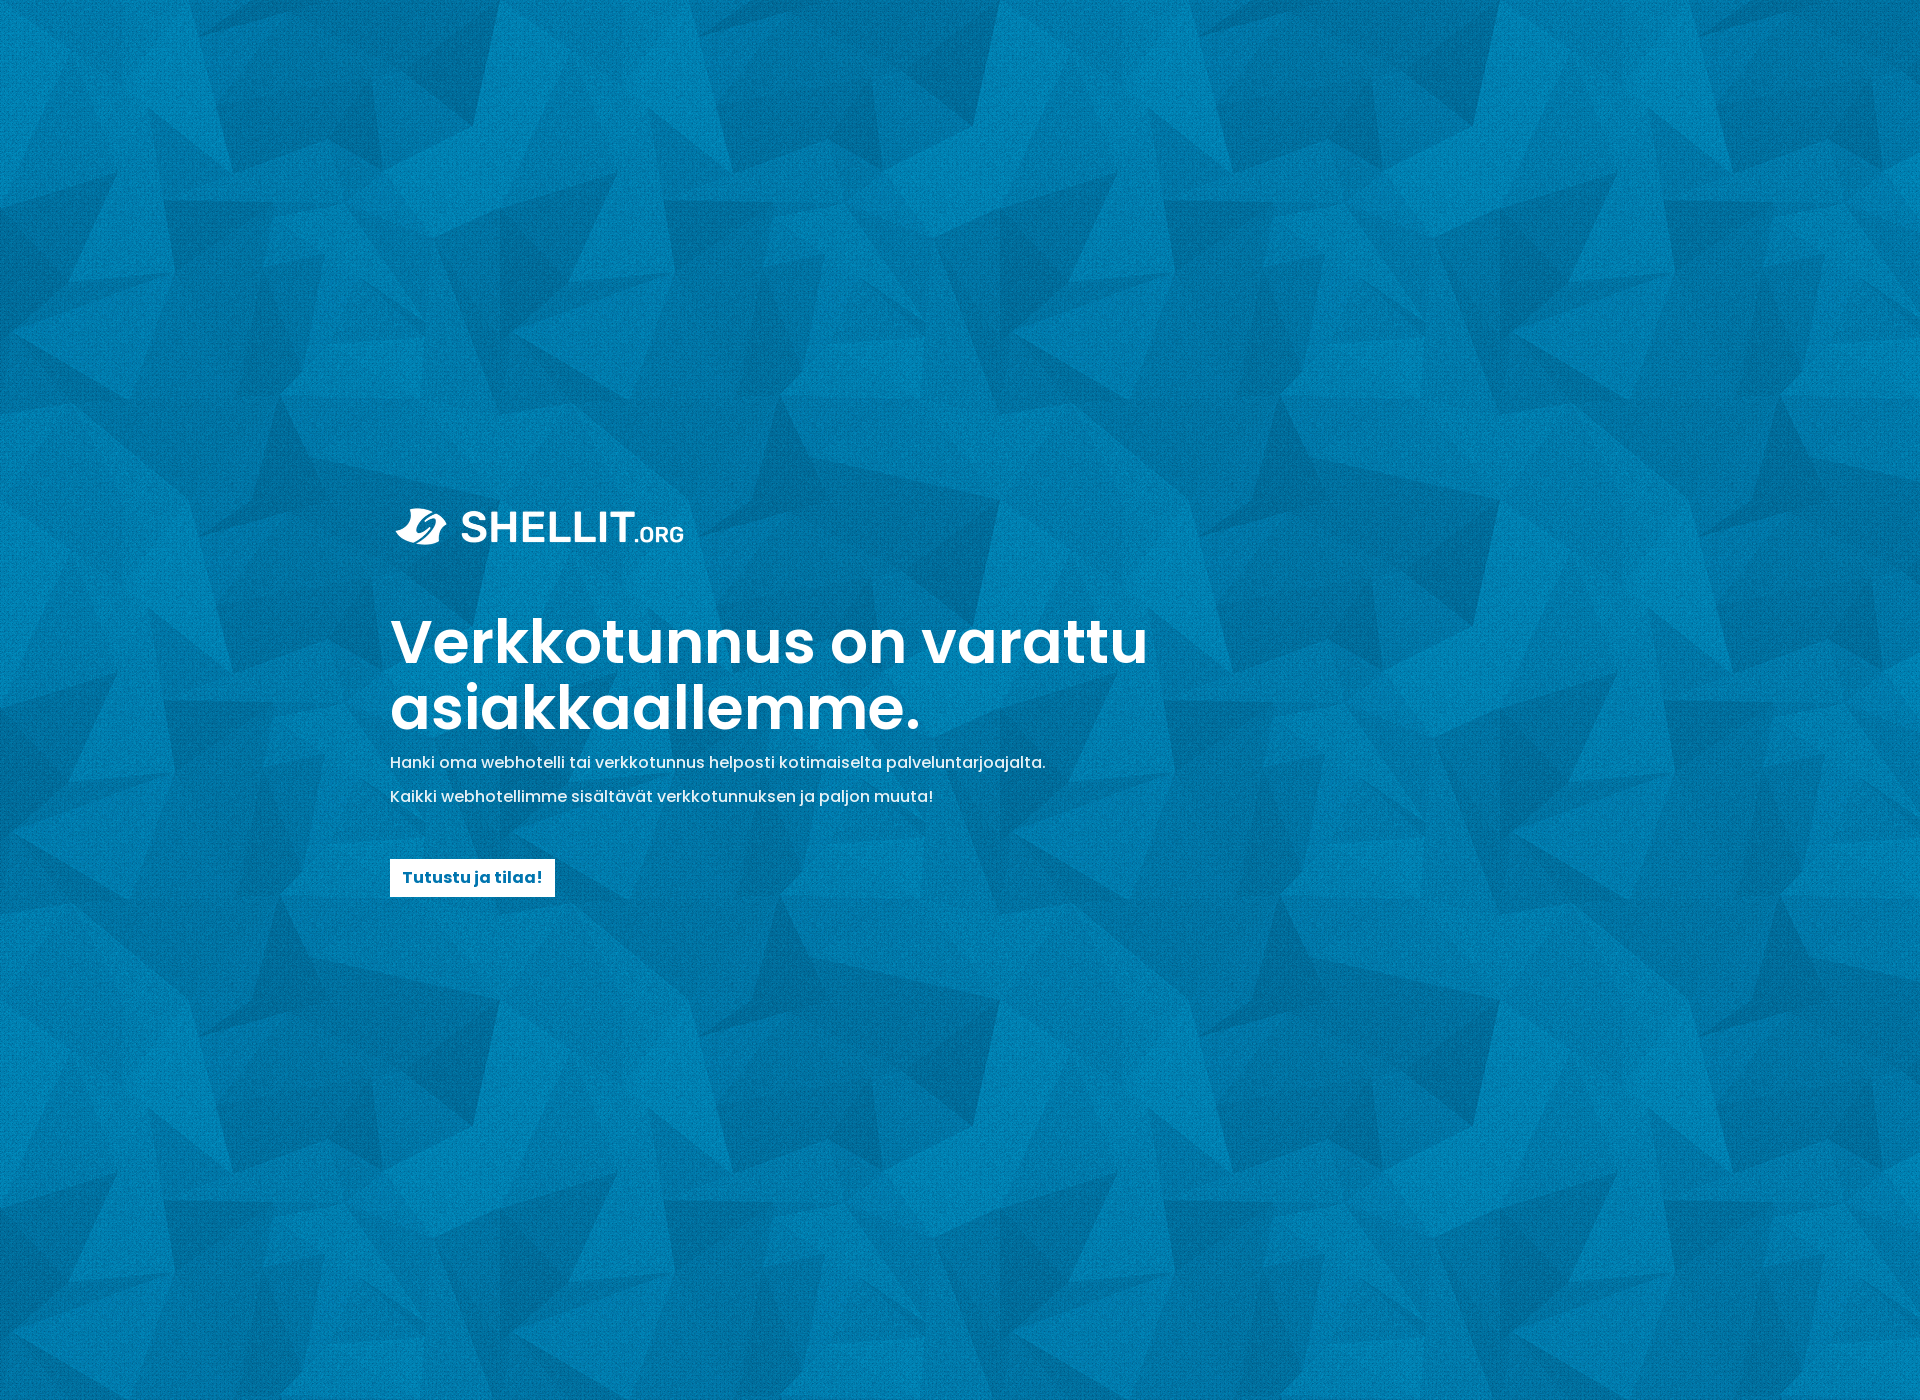 Skärmdump för hallintoprosessi.fi